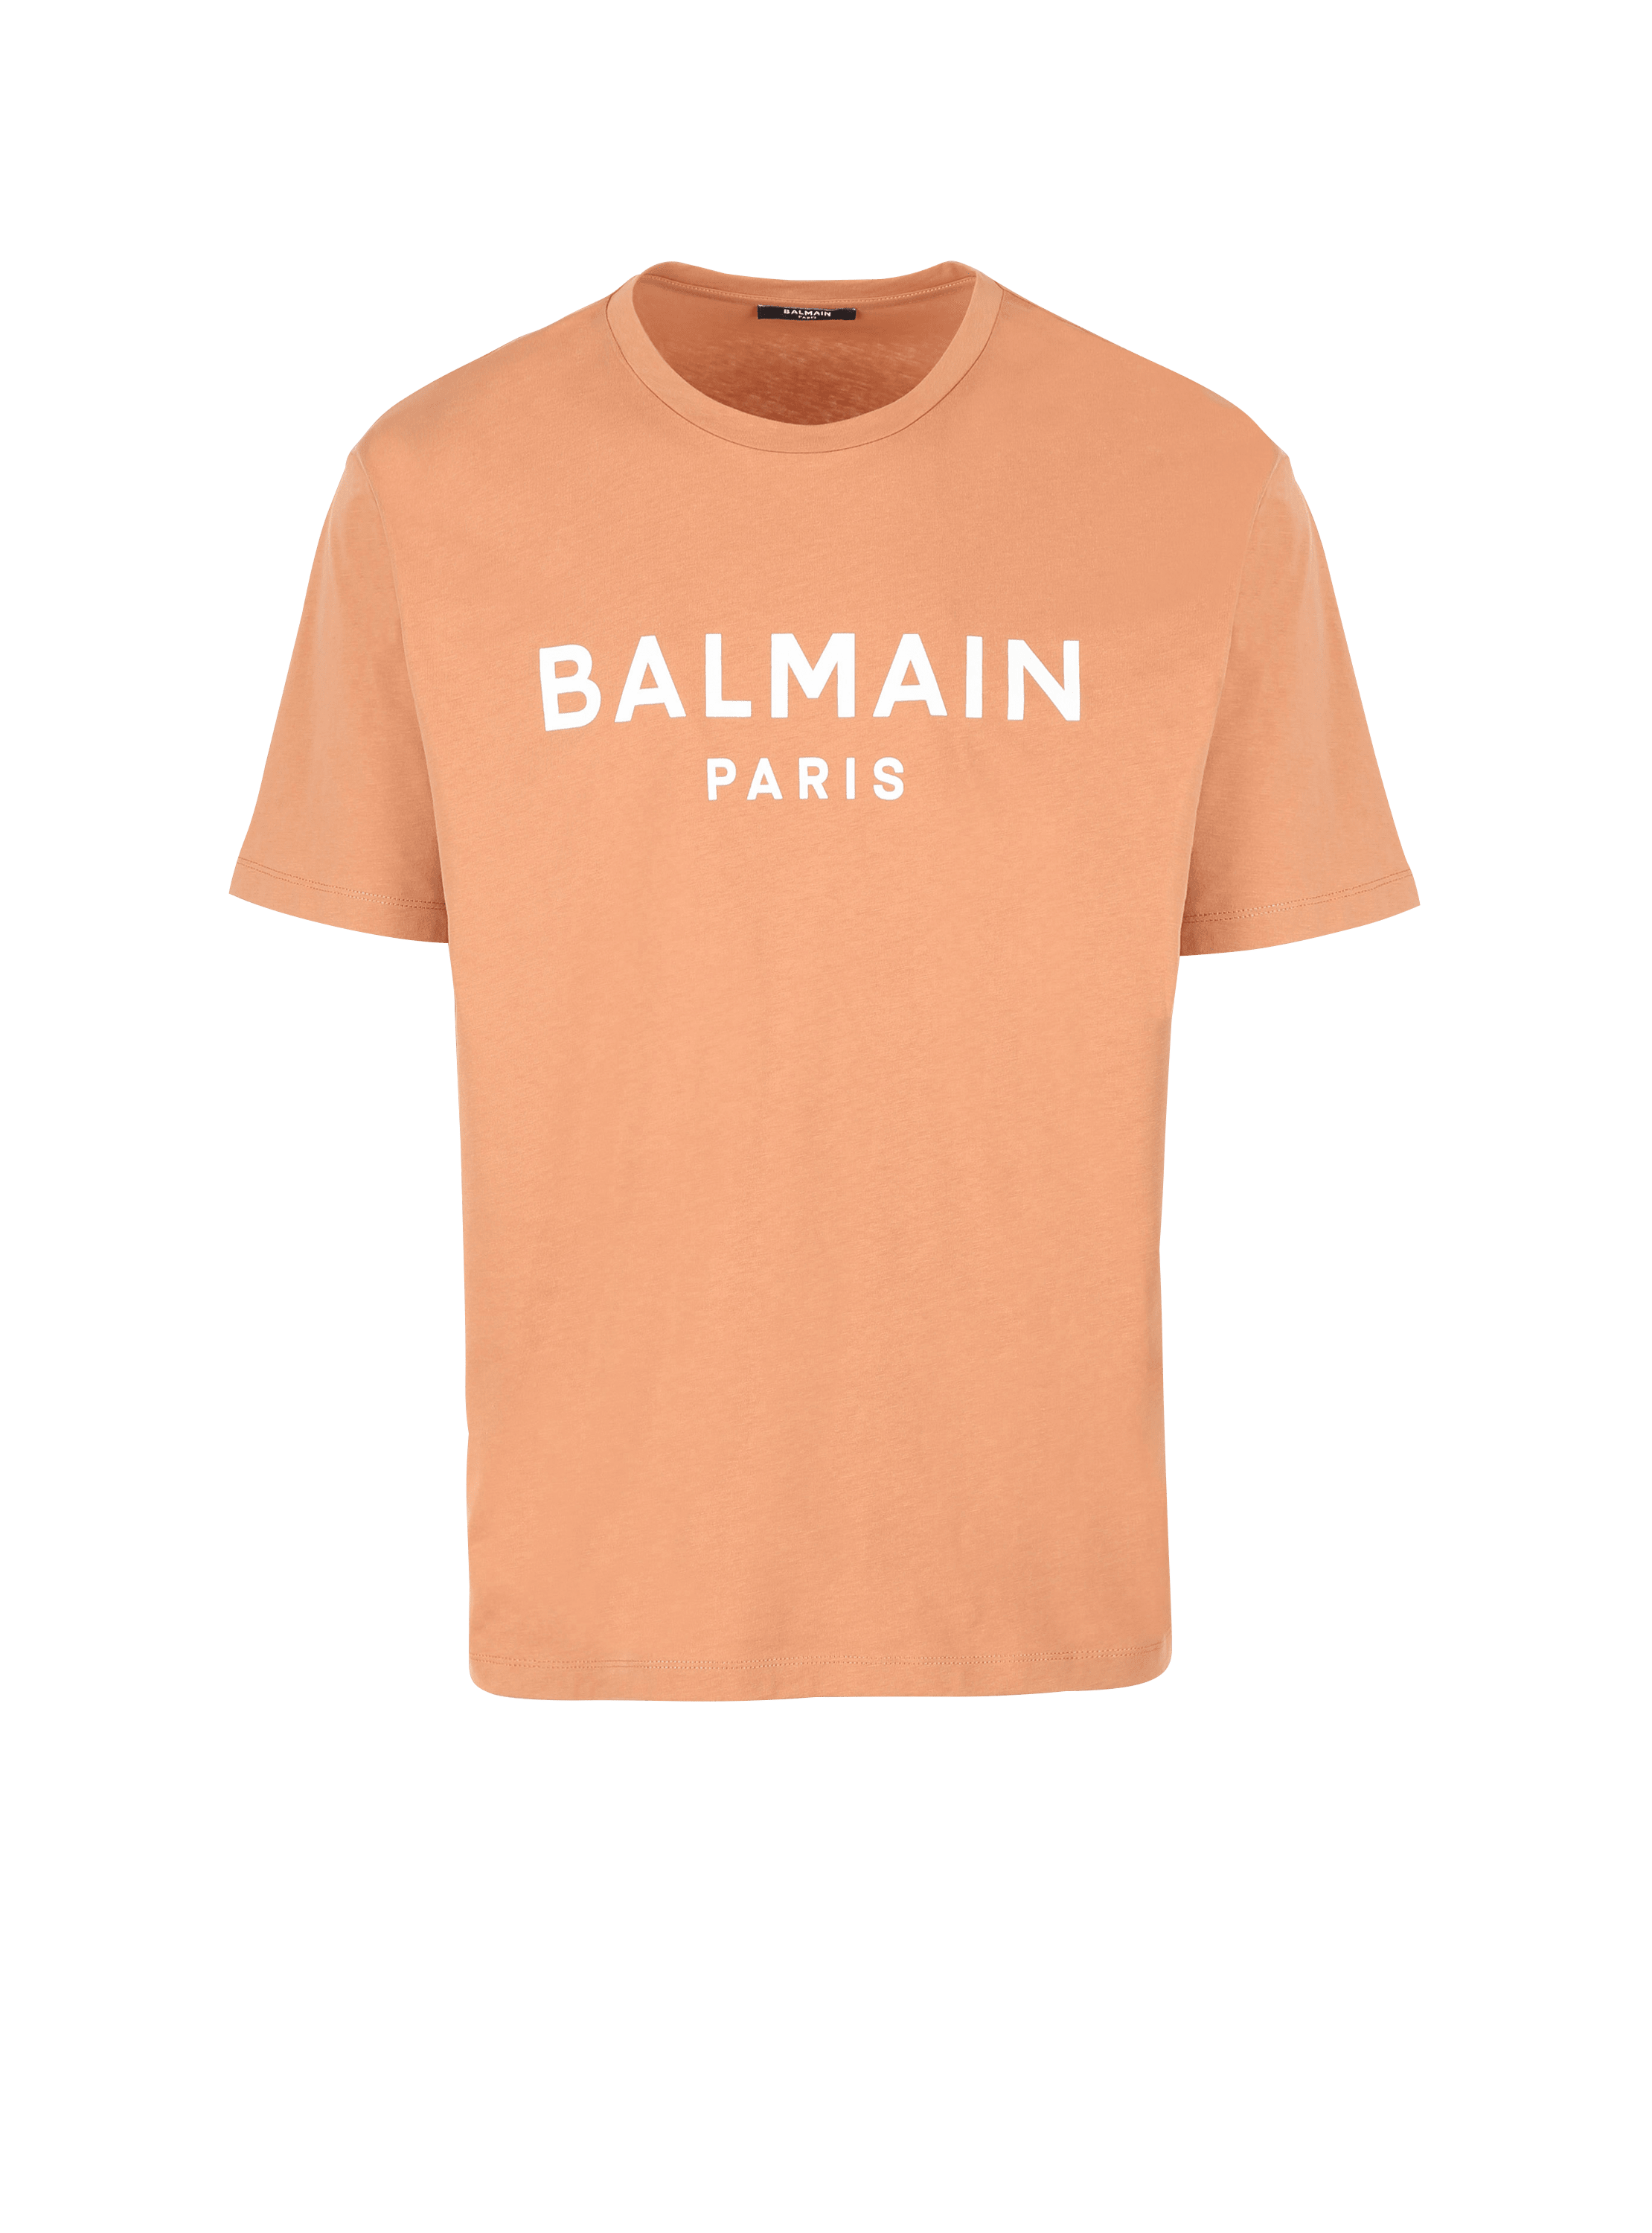 Printed Balmain logo T-shirt, brown, hi-res